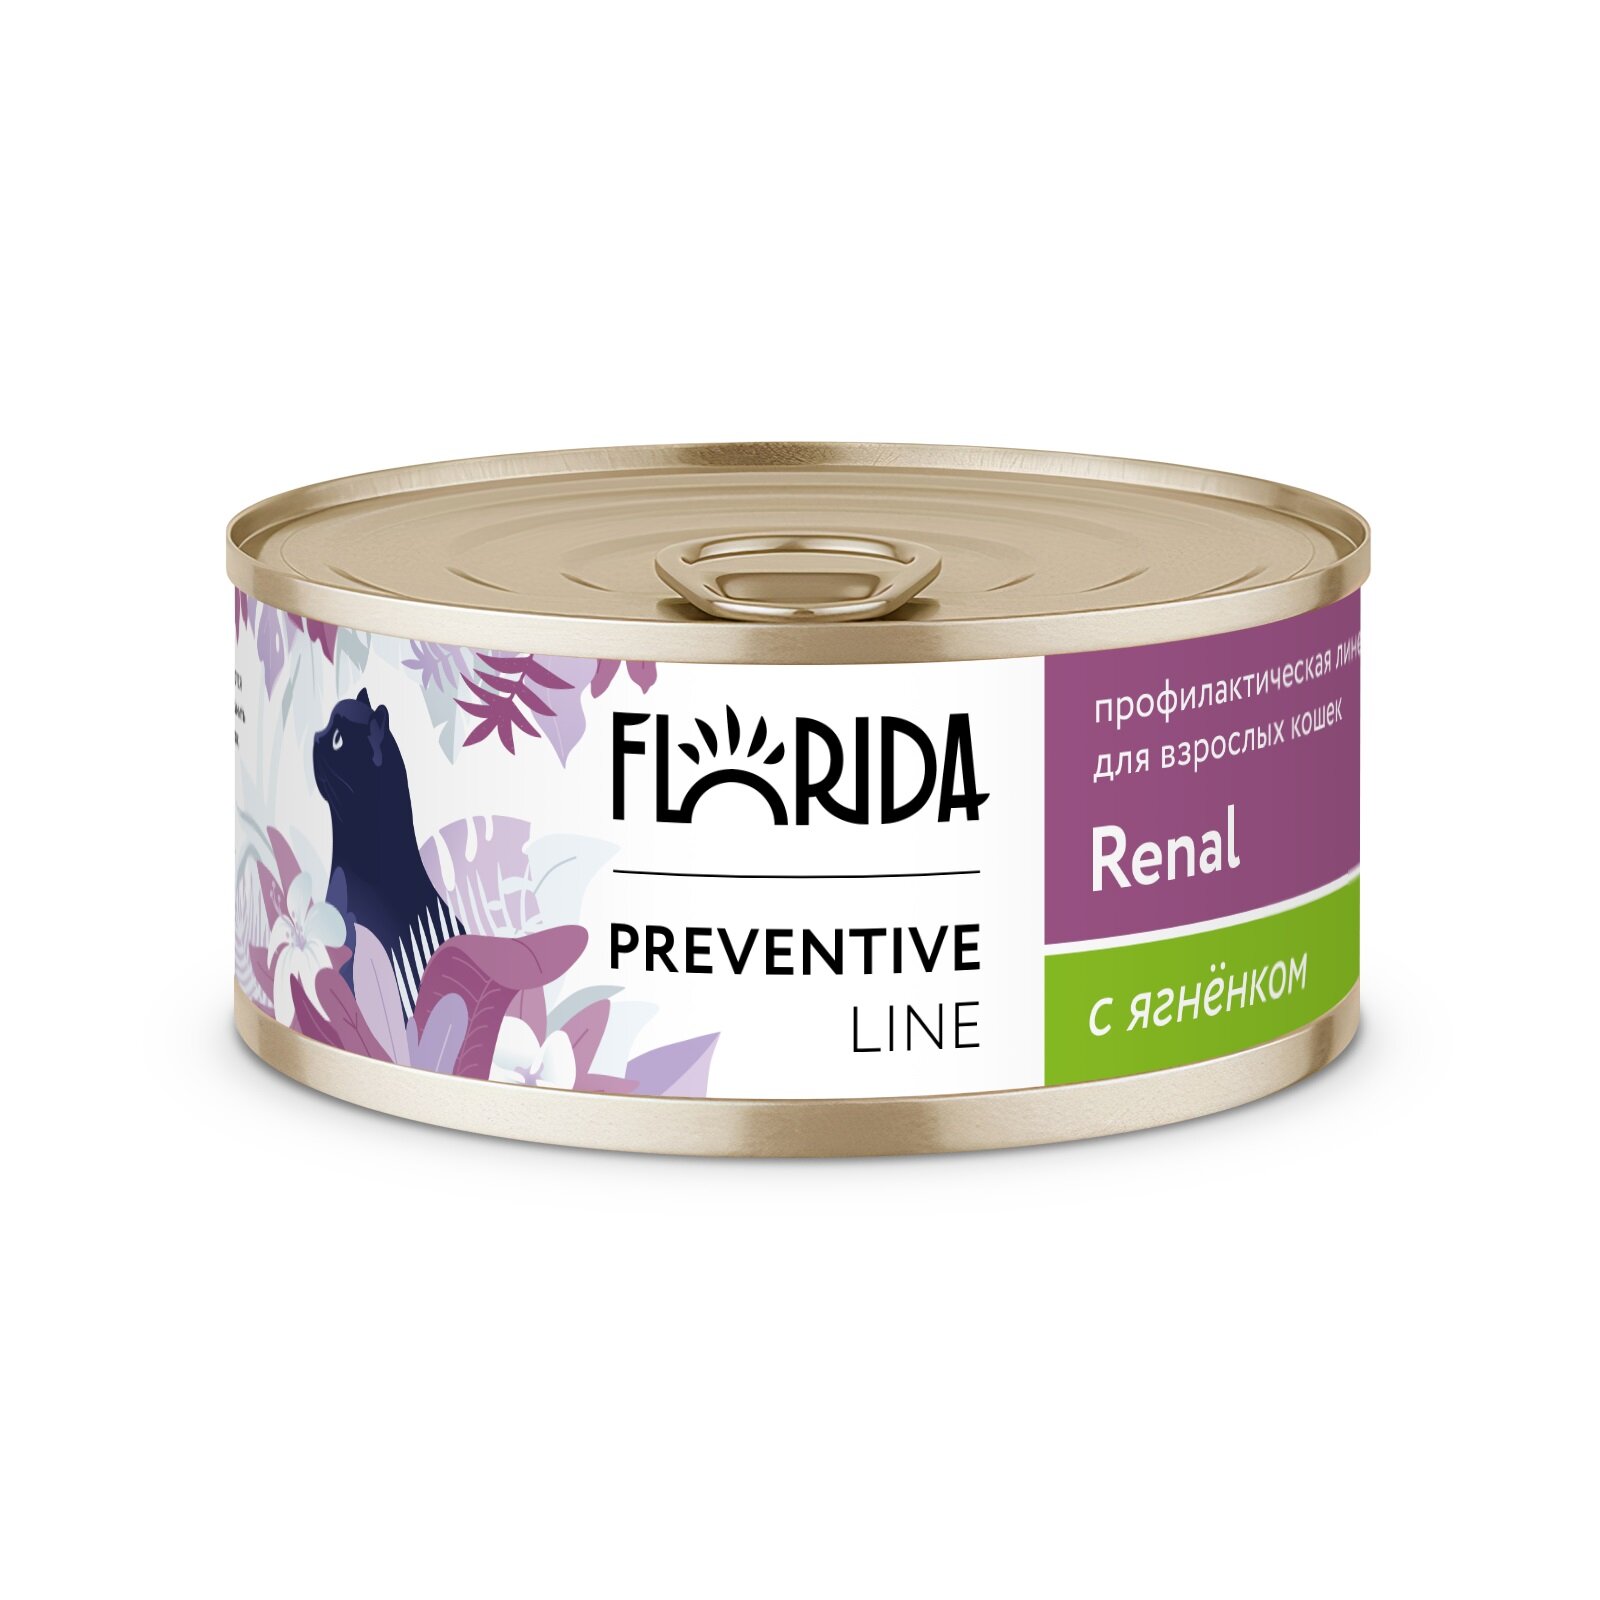 Florida Preventive Line Renal консервы для кошек при хронической почечной недостаточности Индейка, 100 г. упаковка 24 шт